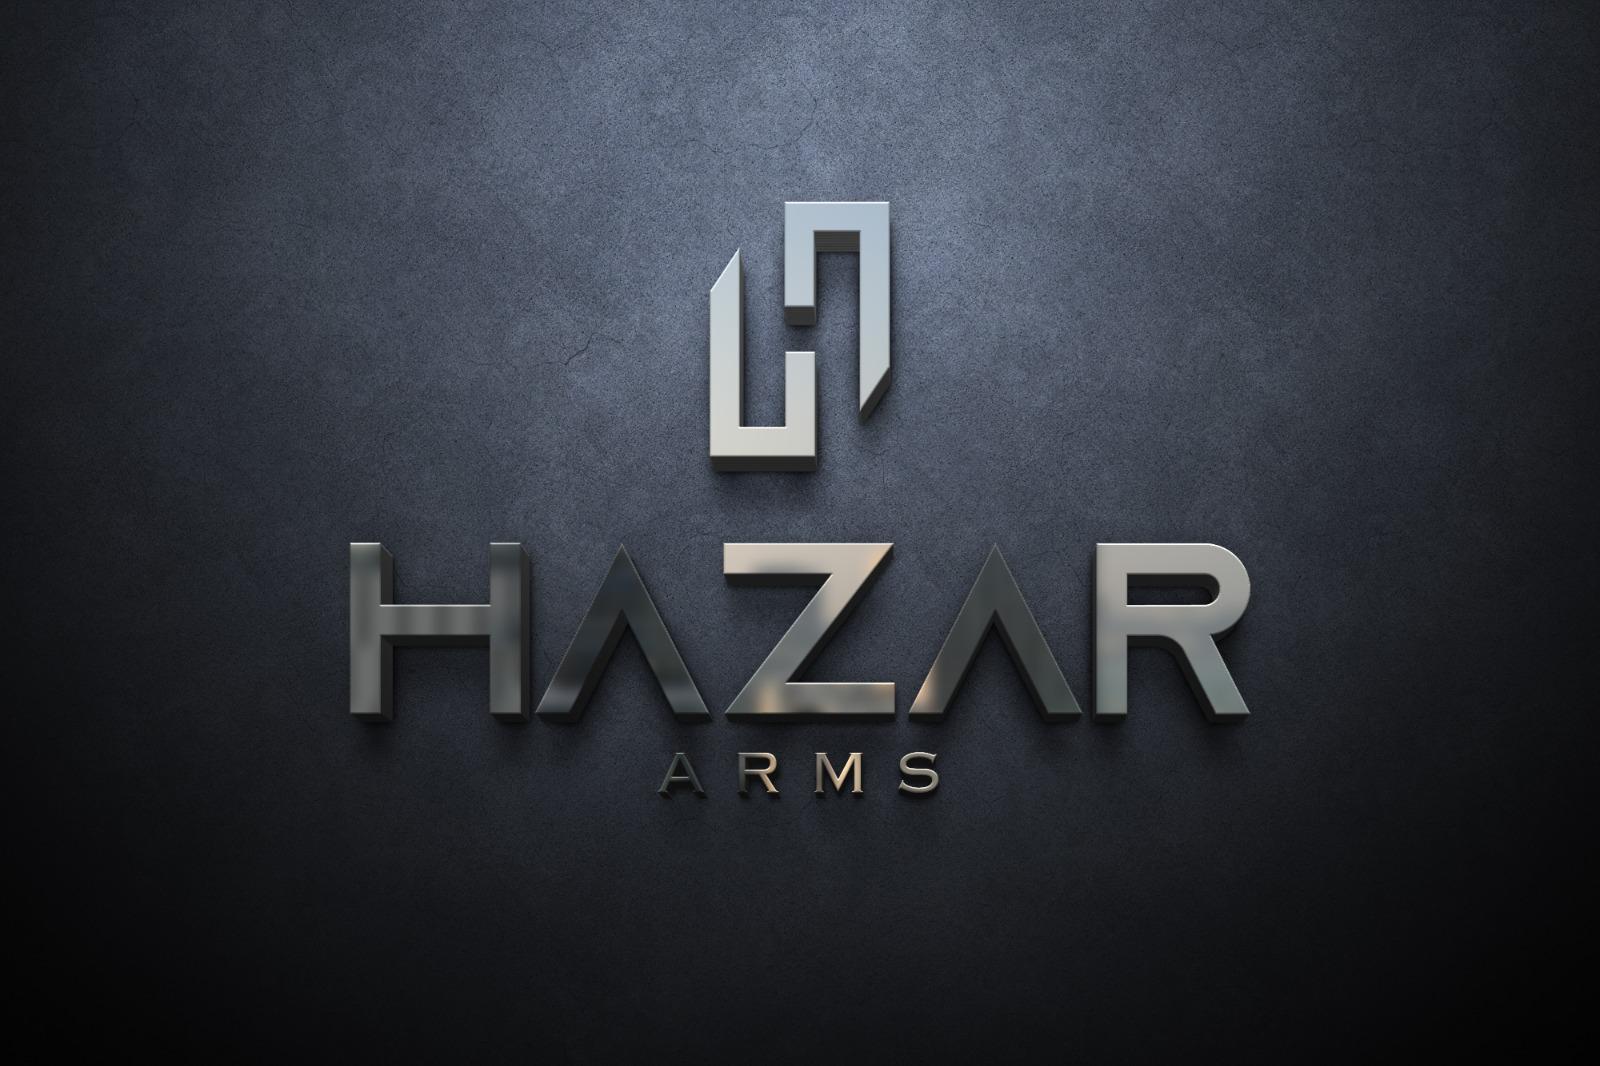 HAZAR ARMS